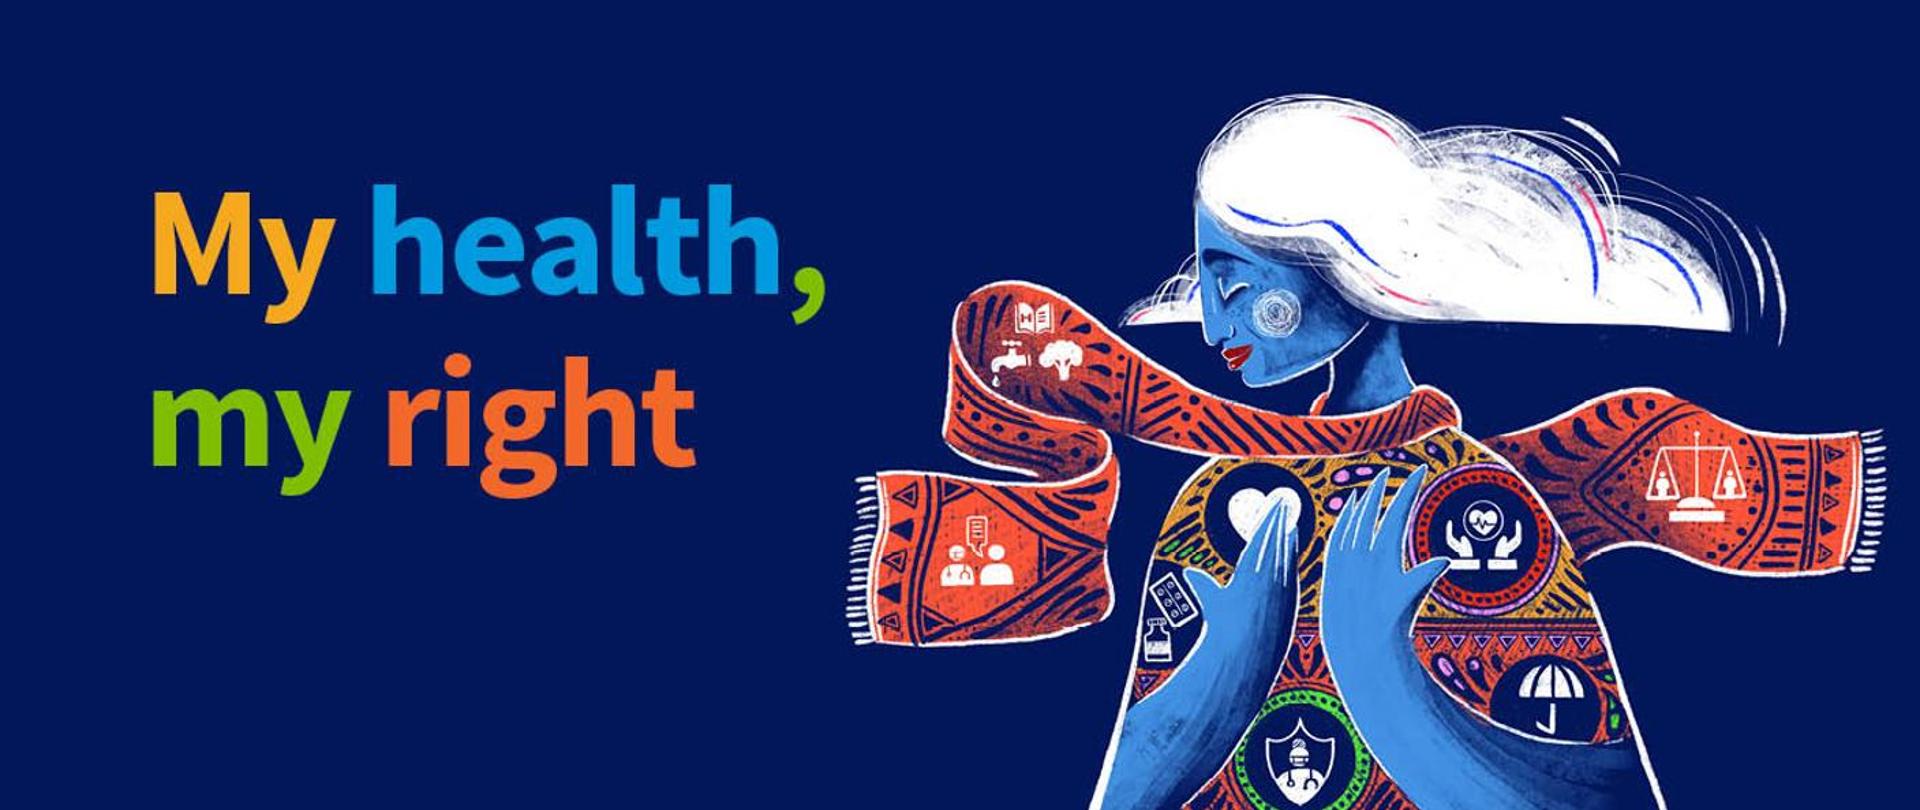 Grafika przedstawiająca kobietę i napis My health my right